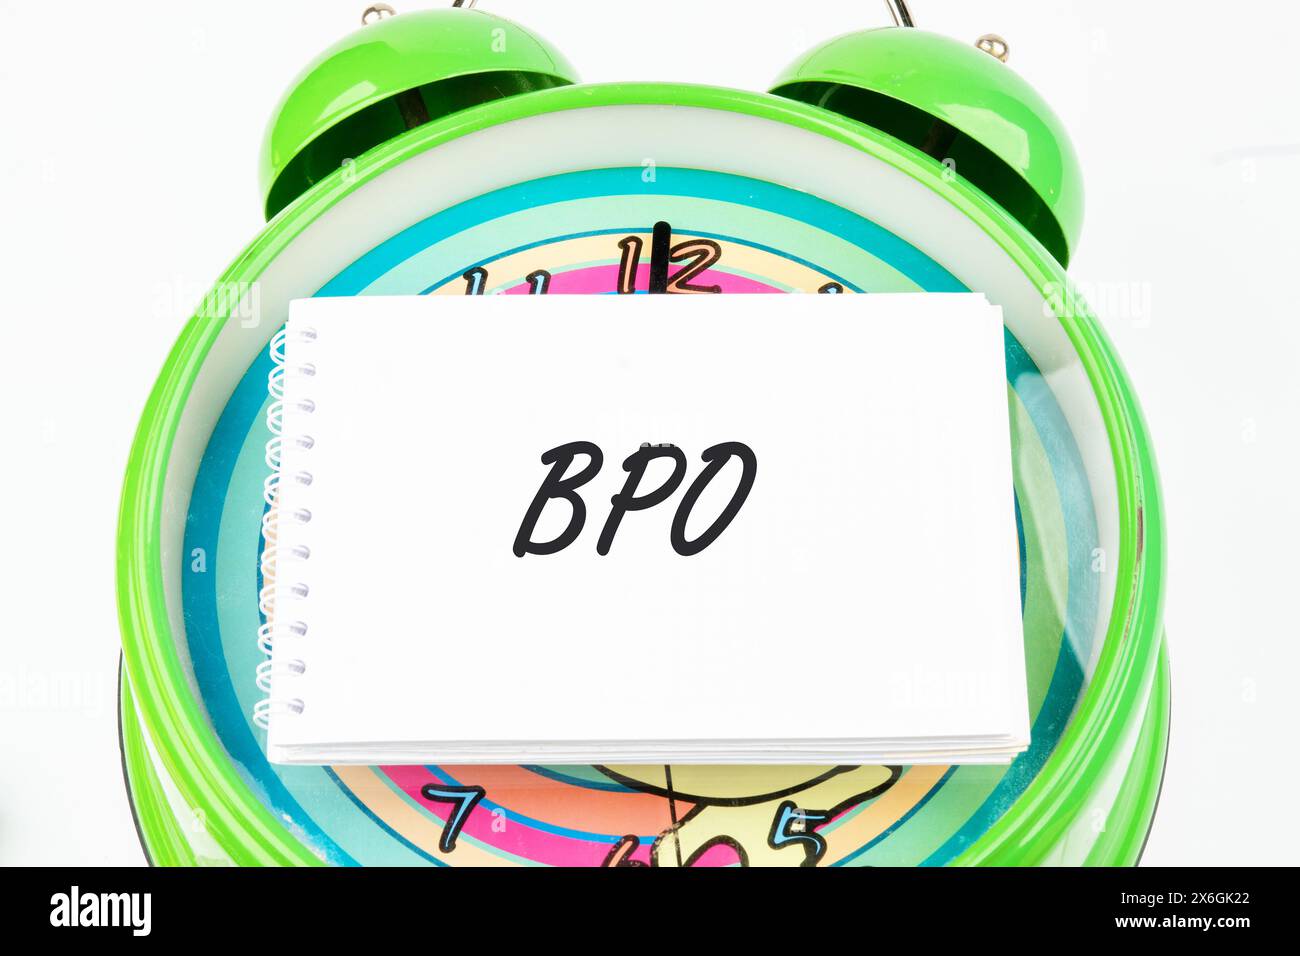 BPO - abréviation de Business Process Outsourcing. BPO sur une carte de visite sur le cadran de la montre Banque D'Images